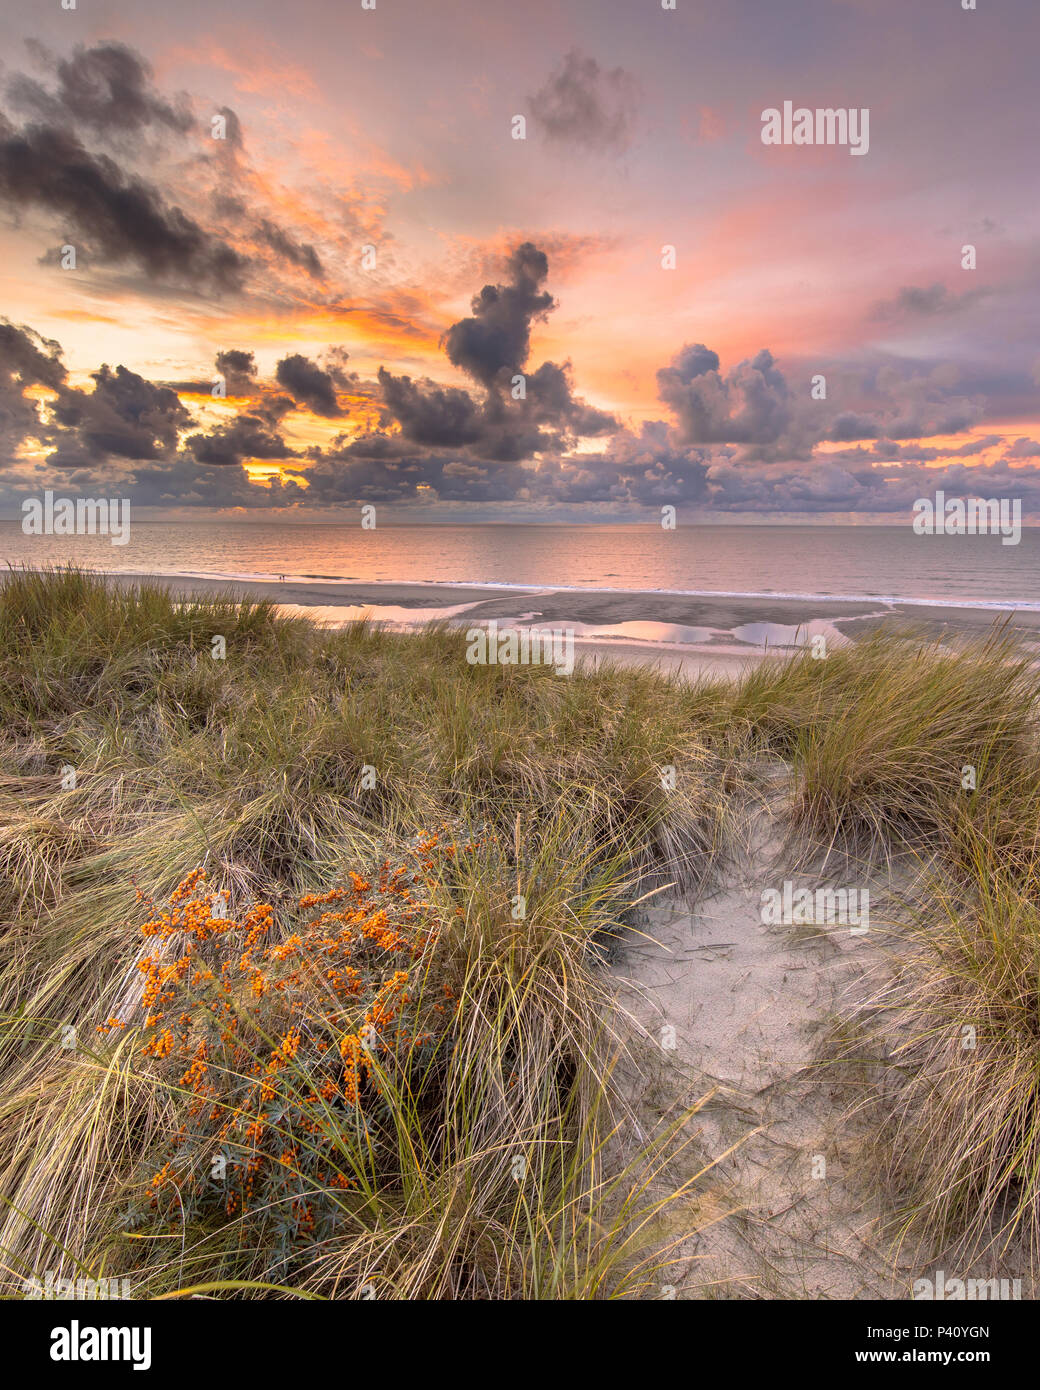 Blick auf den Sonnenuntergang von der Düne über Nordsee und Kanal Hexe gemeinsame Sanddorn (Hippophae rhamnoides) vorne in Zeeland, Niederlande Stockfoto